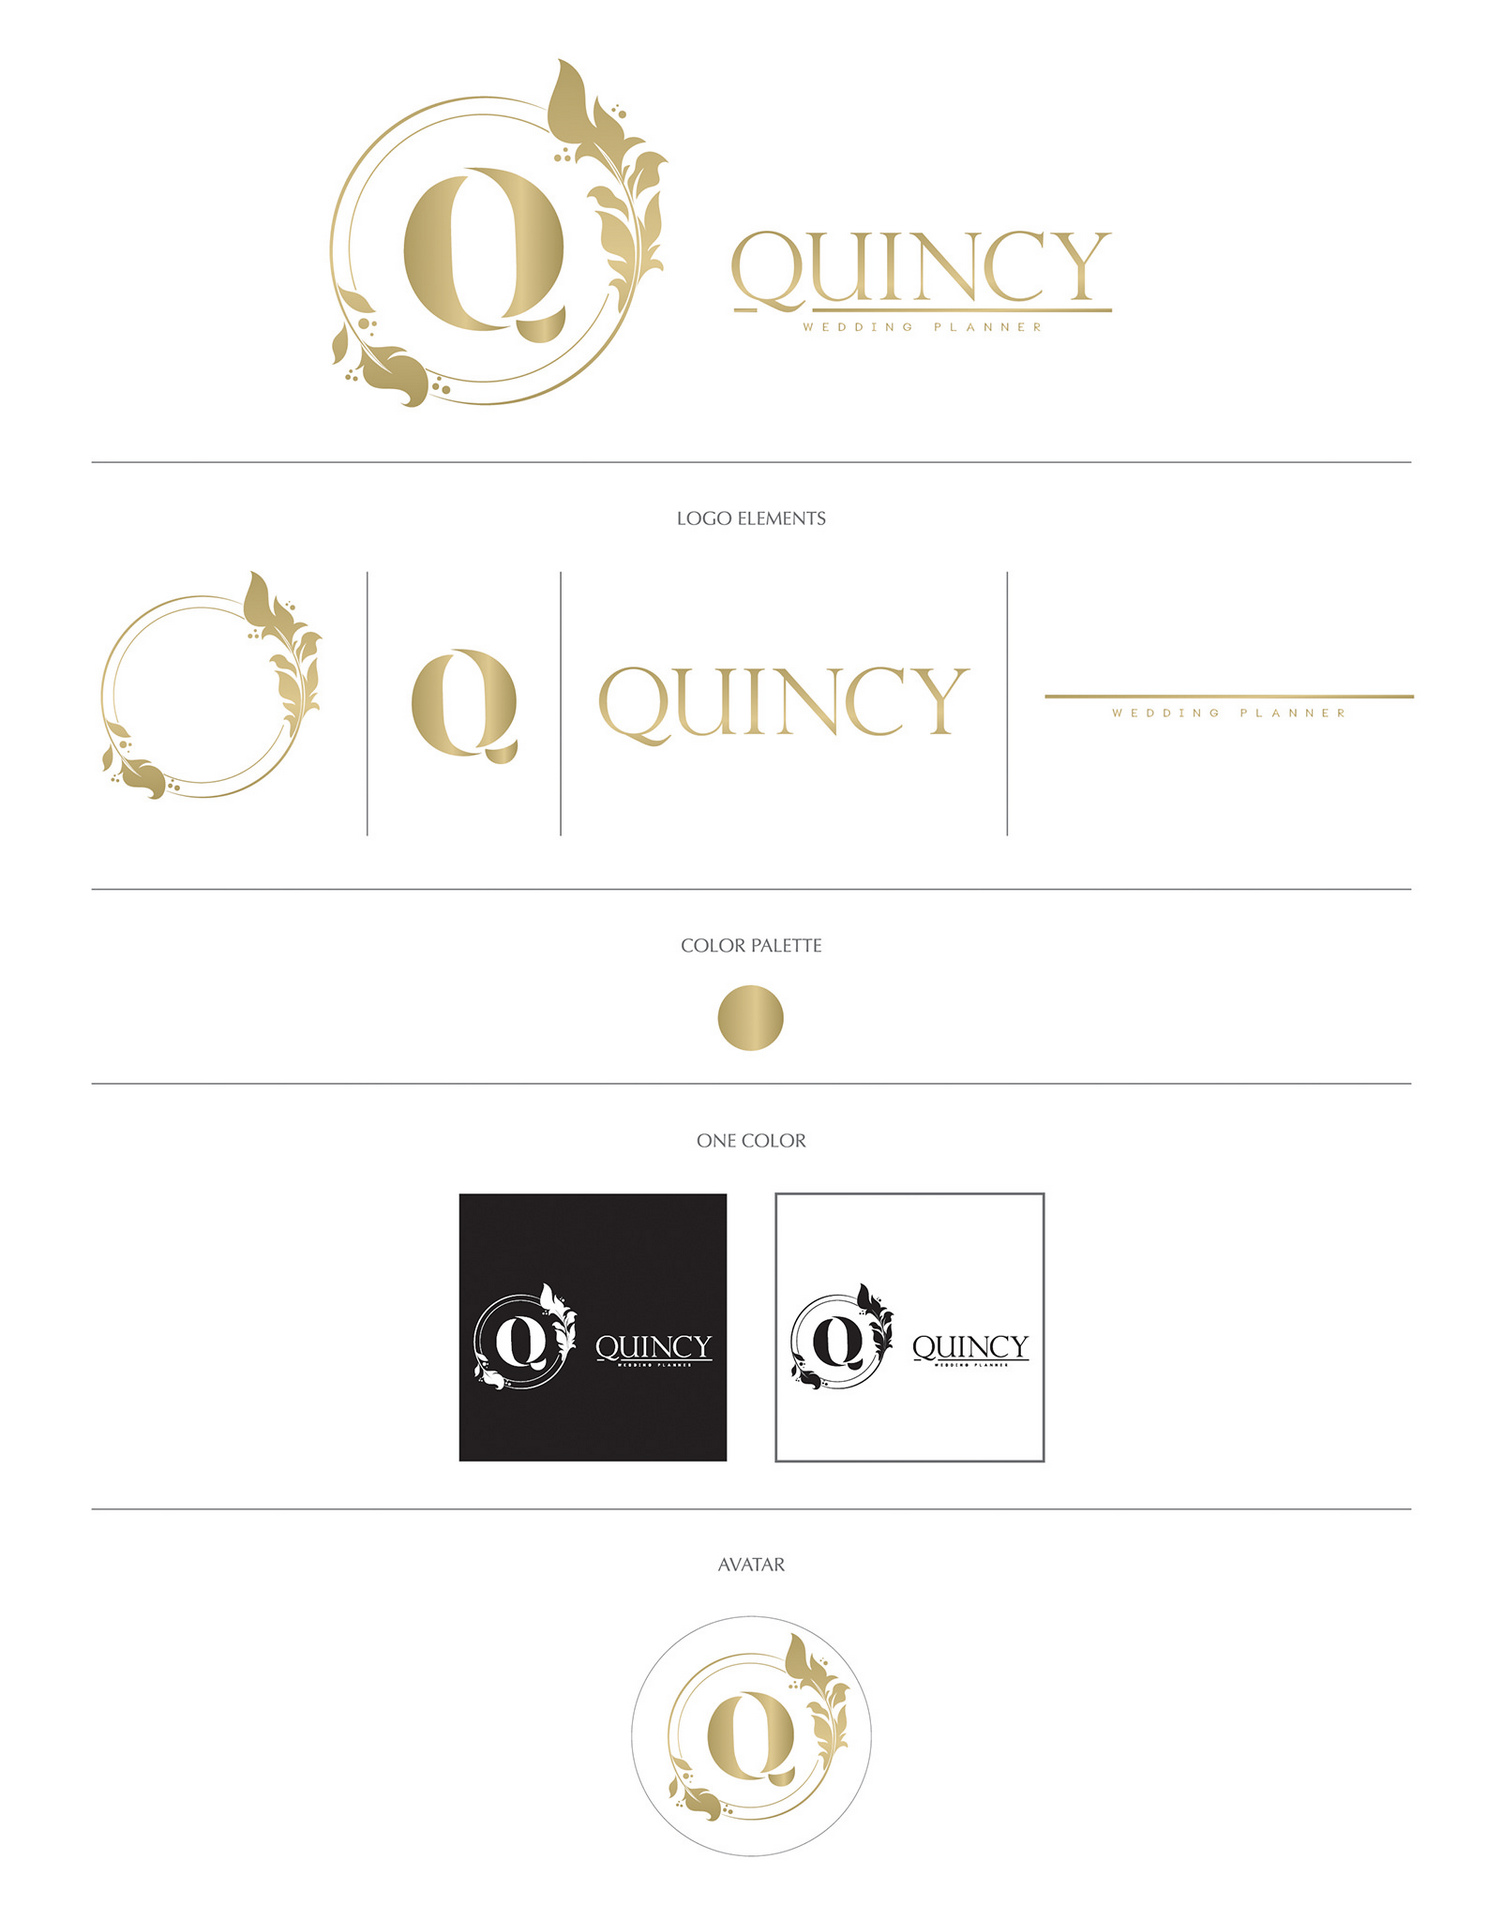 Quincy wedding planner logo design